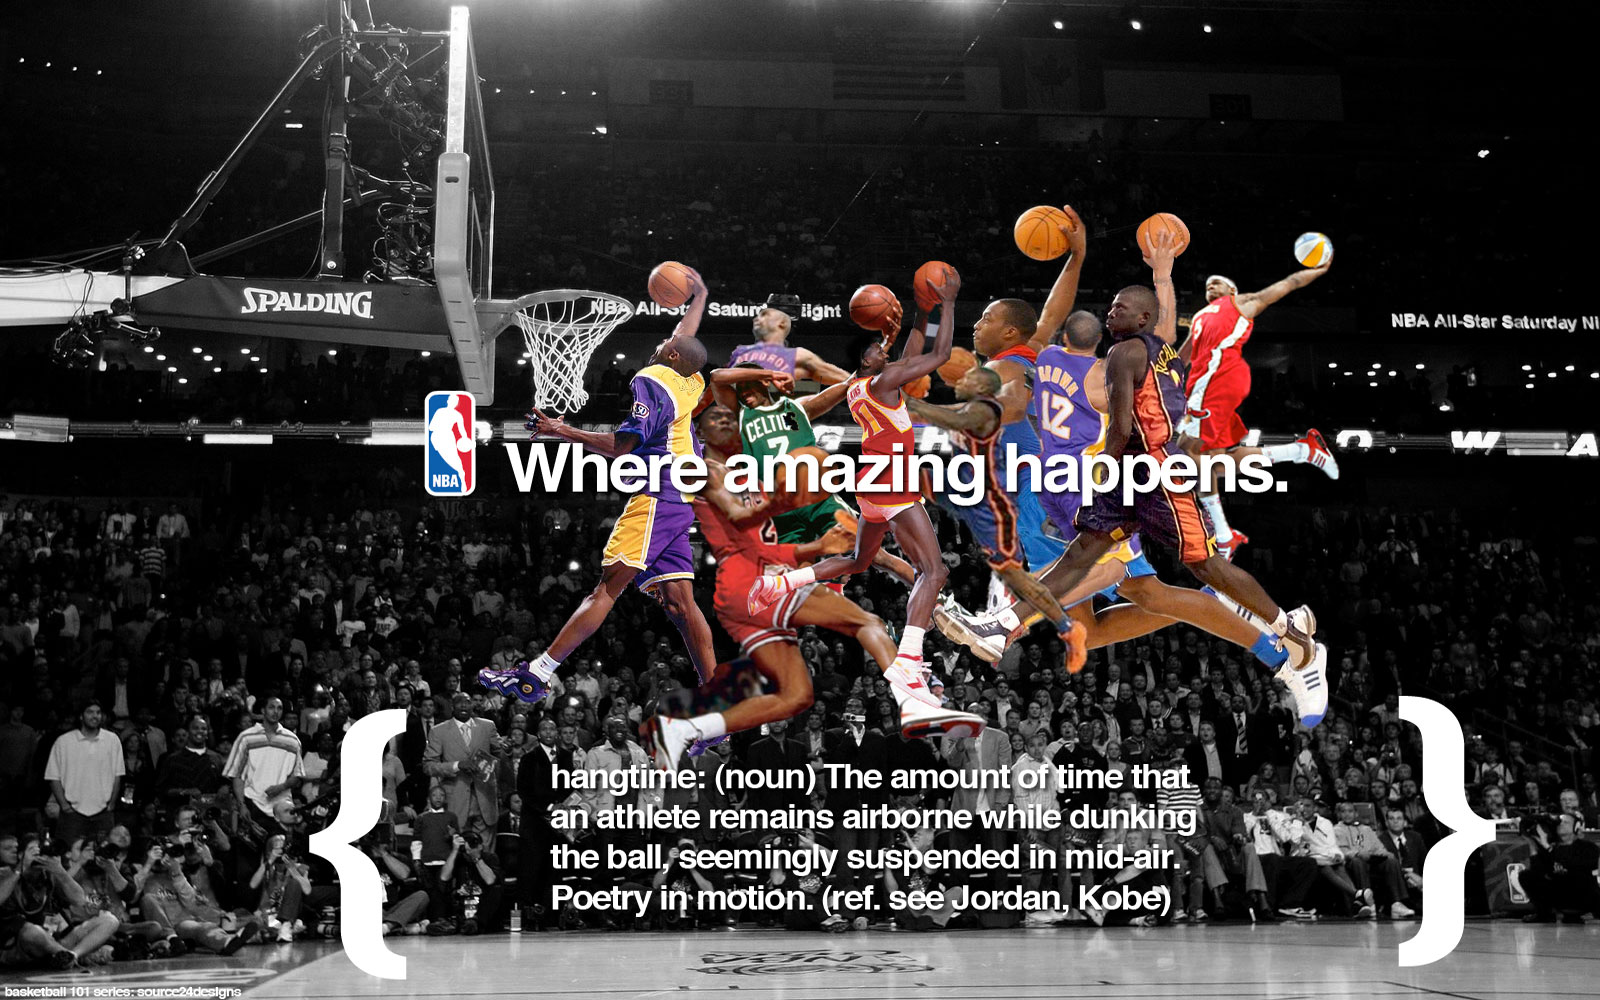  wallpaper nba wallpaper share this cool nba basketball team wallpaper